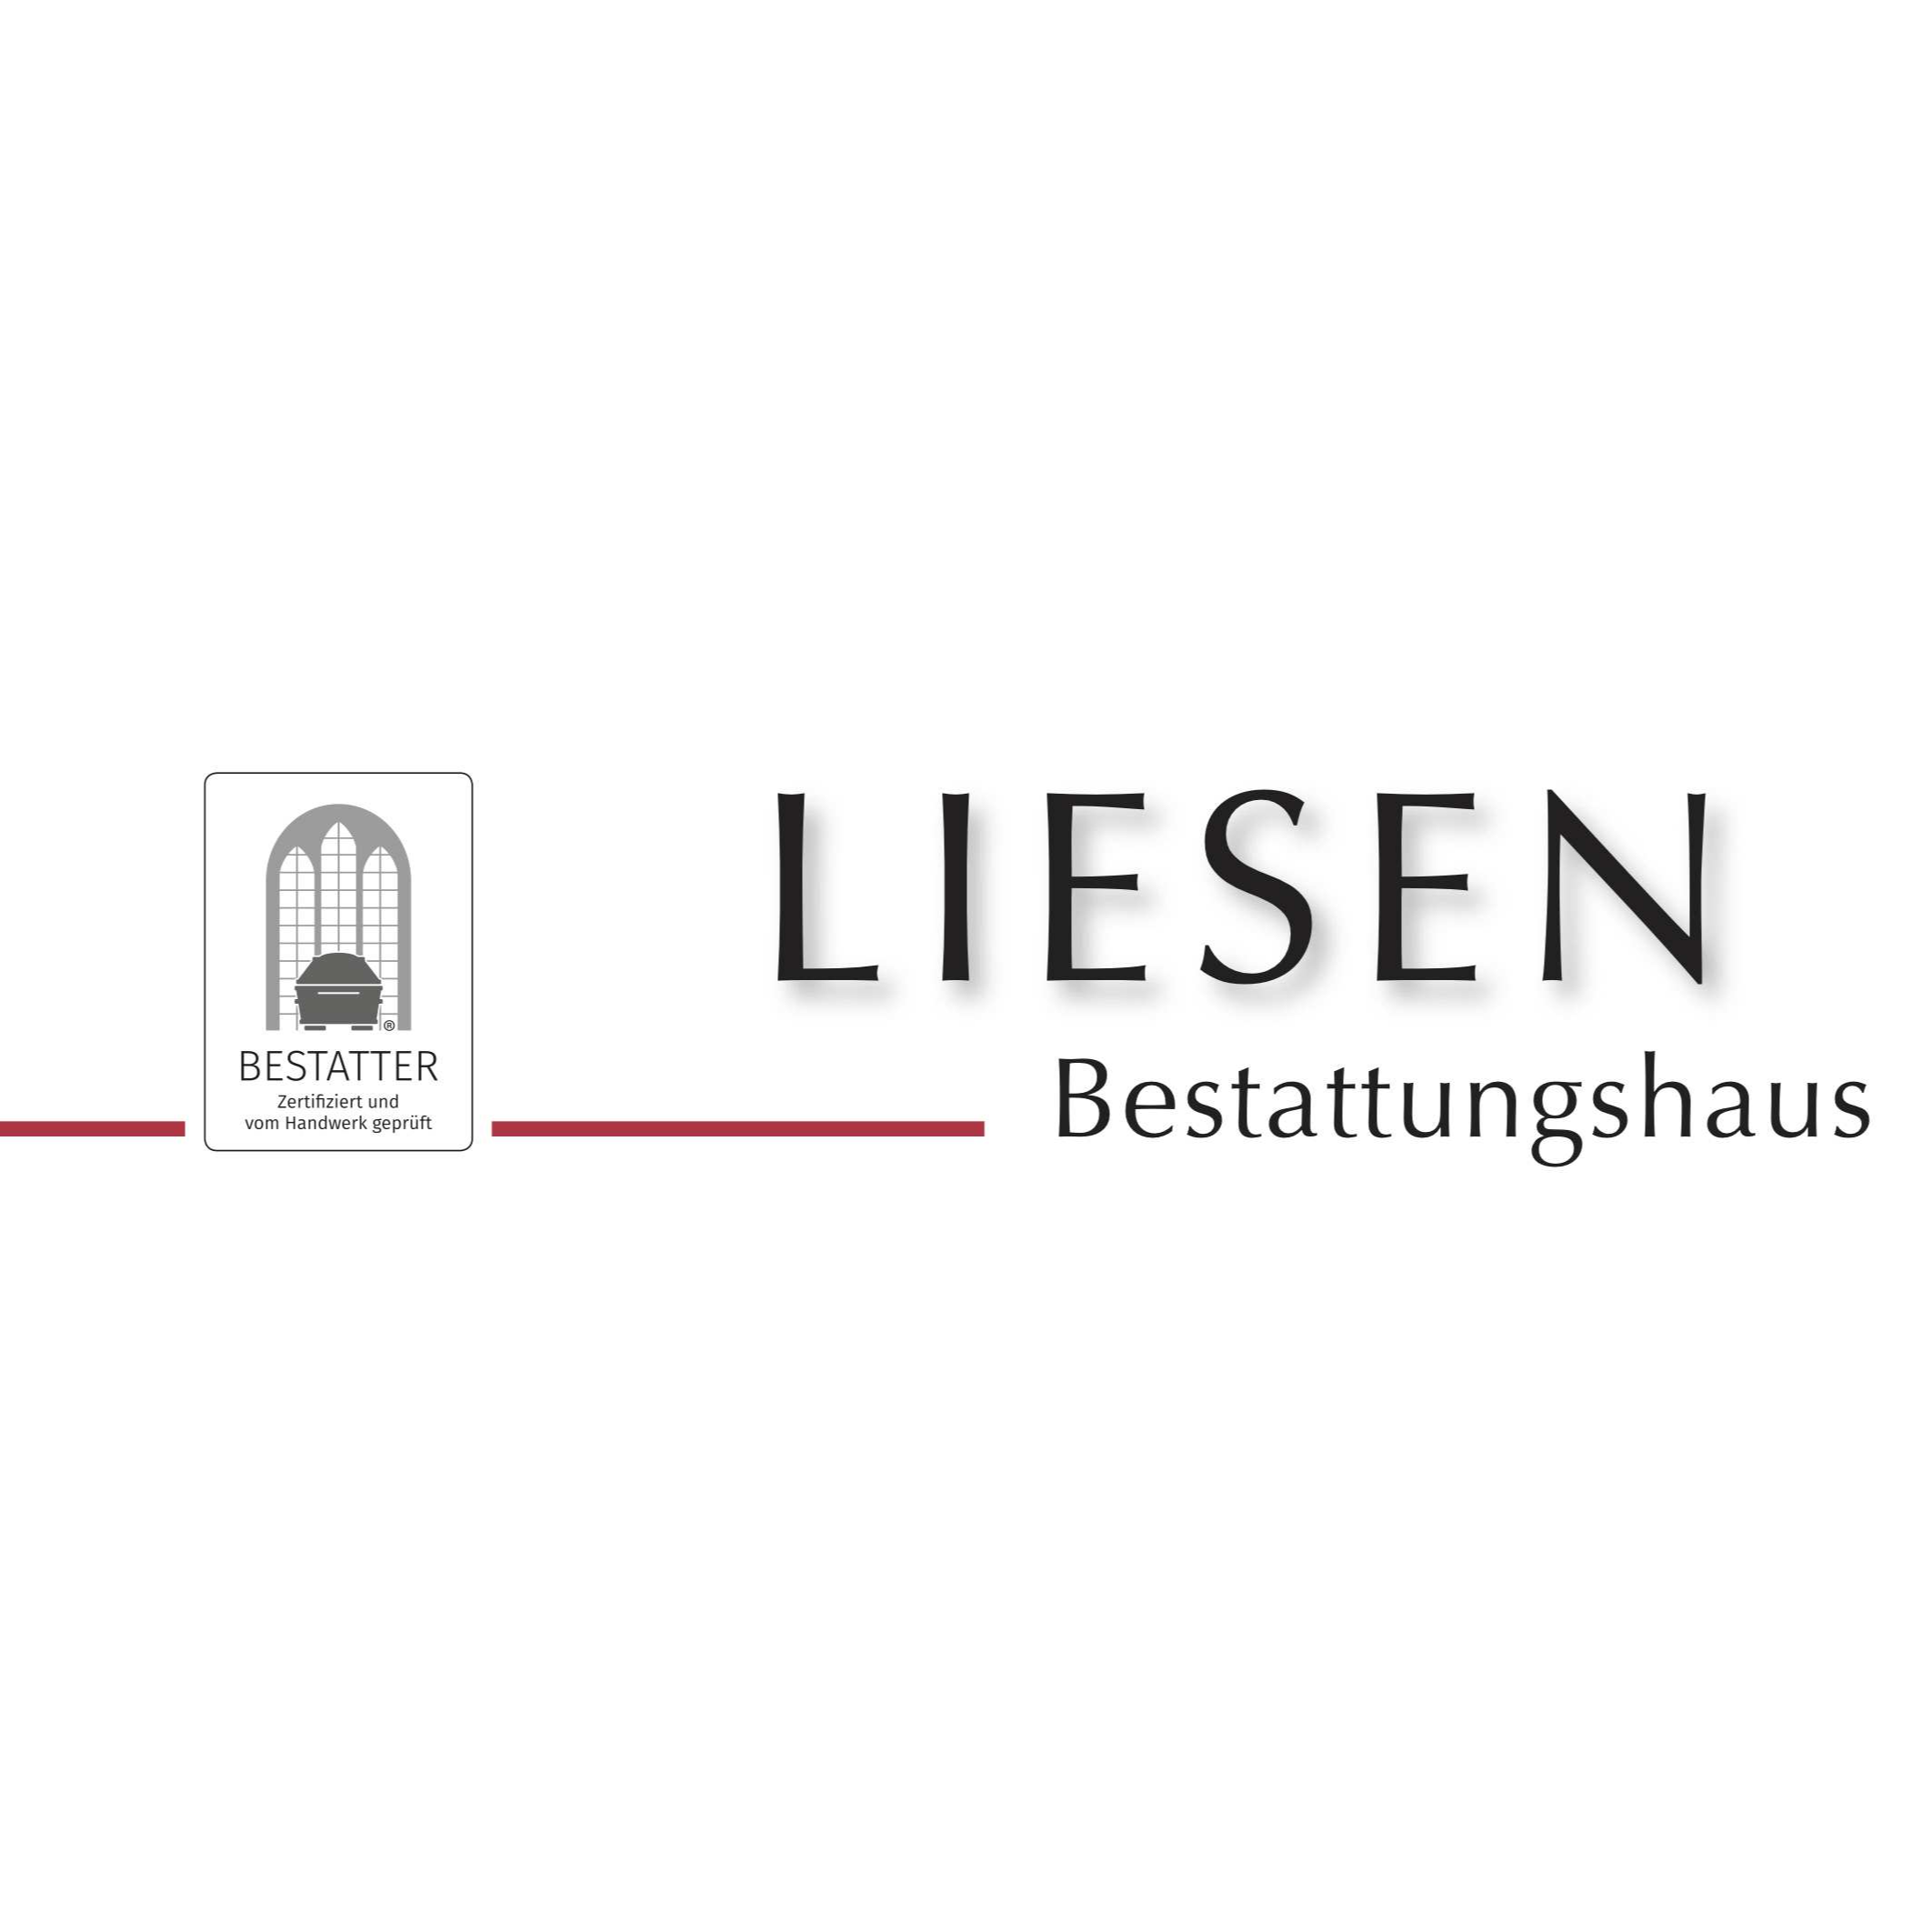 Liesen GmbH Bestattungshaus - Schreinerei in Oberhausen im Rheinland - Logo